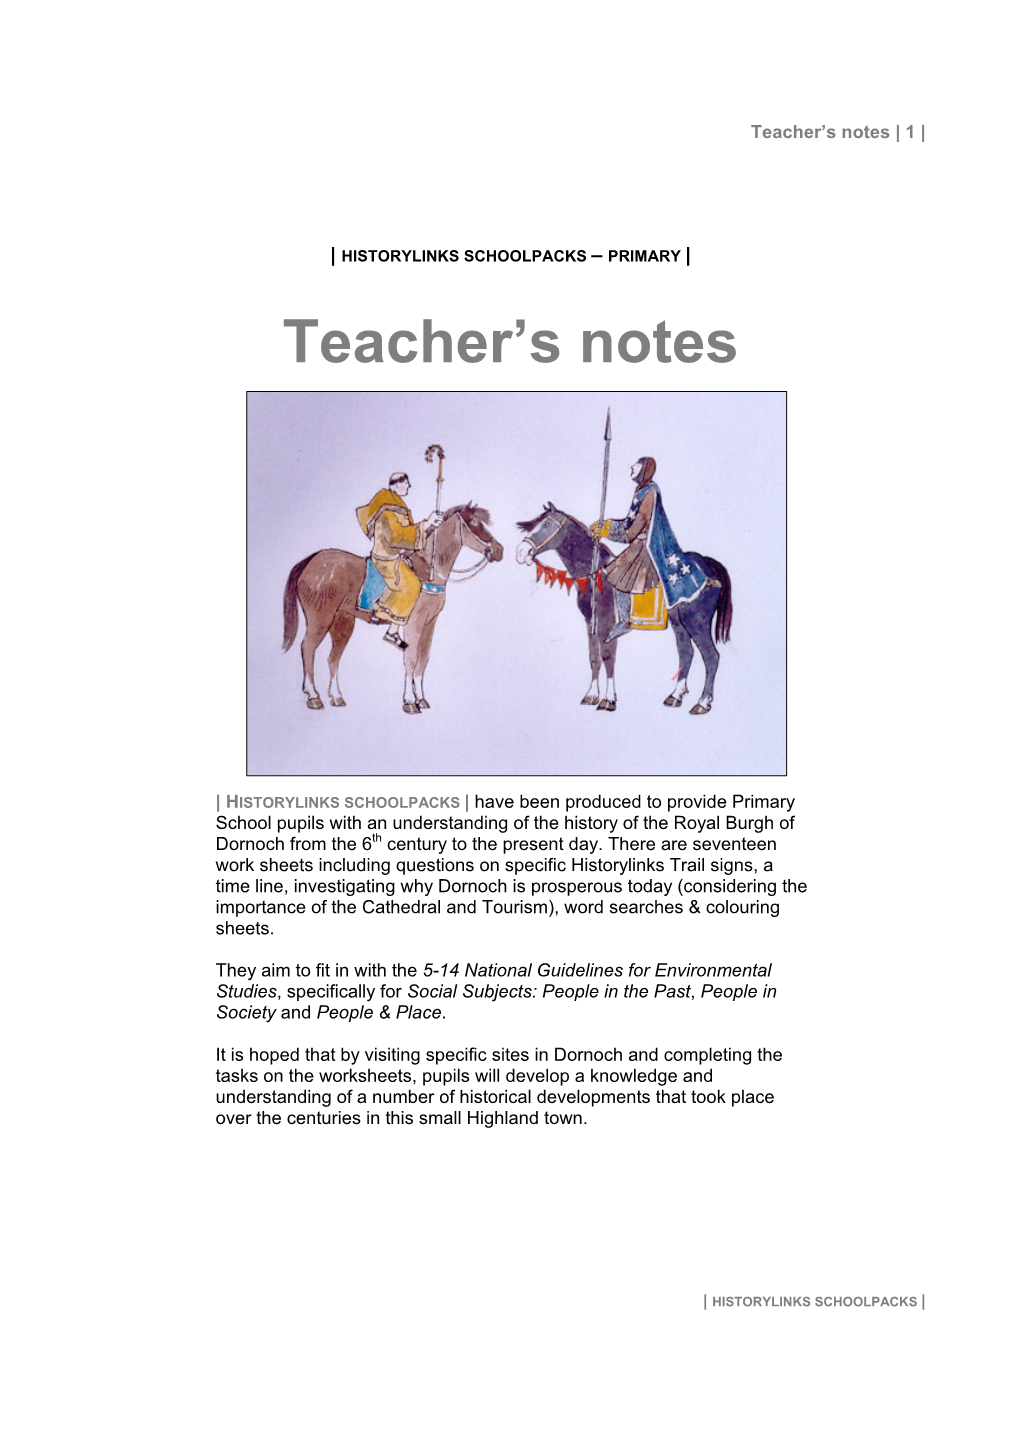 Teacher's Notes